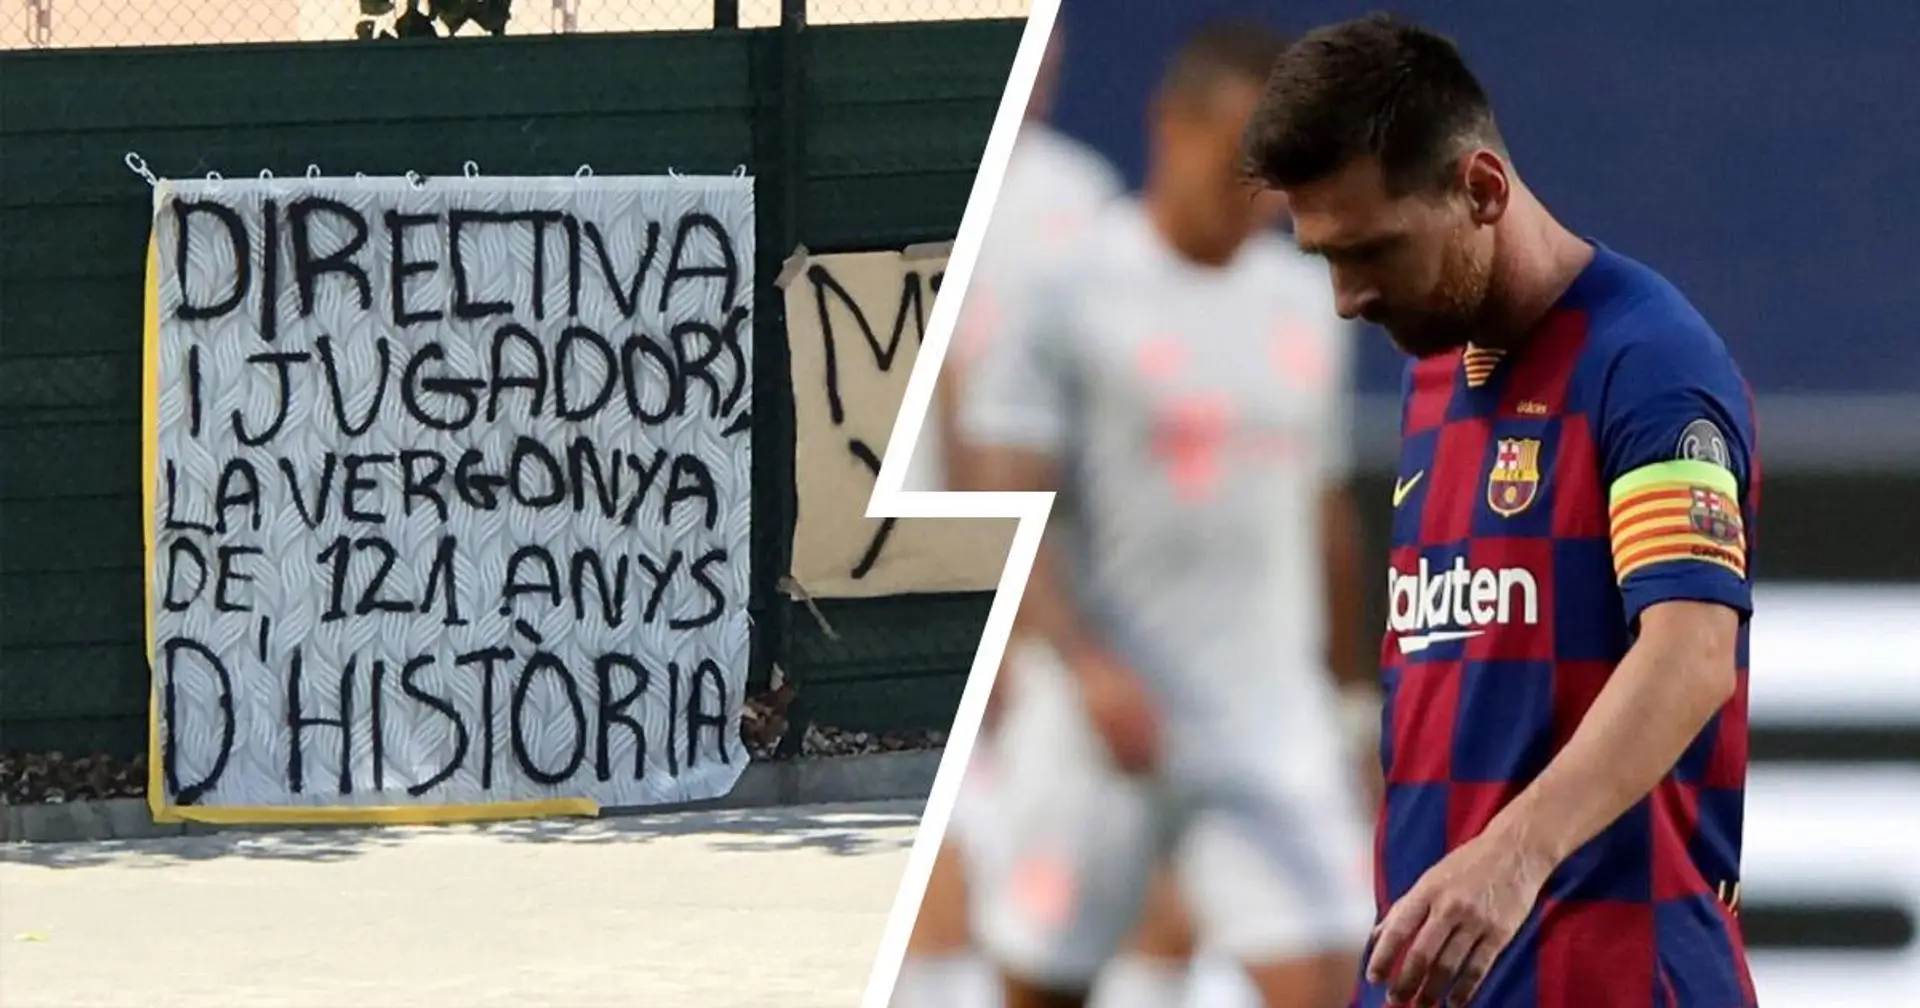 'Directiva y jugadores, una vergüenza para los 121 años de historia': la afición recibe al Barça en el Camp Nou con pancartas